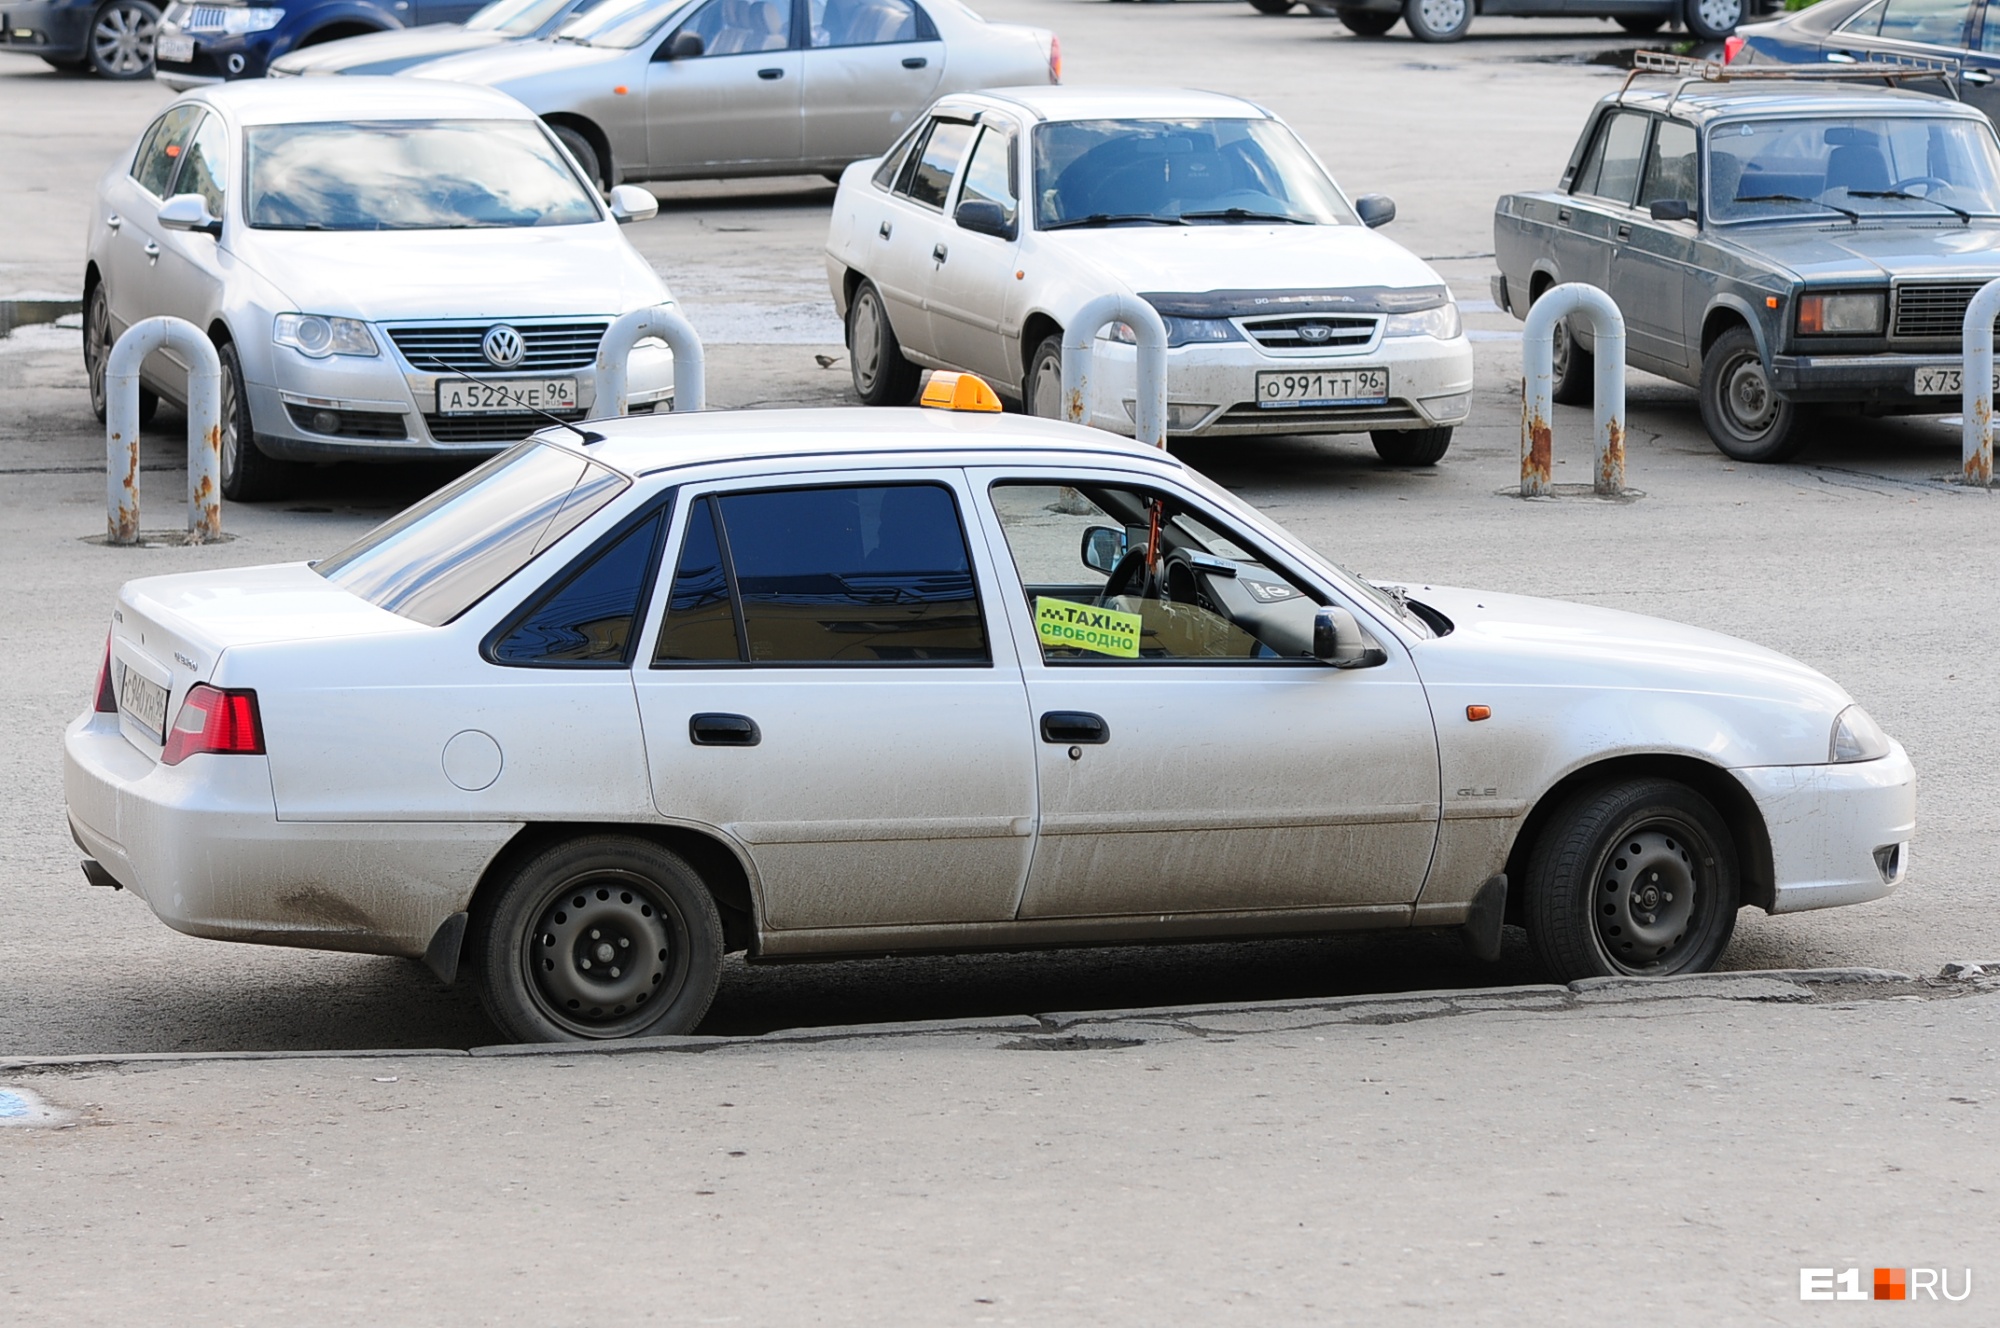 Битва за 30 рублей: в Екатеринбурге упорный таксист поругался с агрегатором из-за сбежавшего пассажира